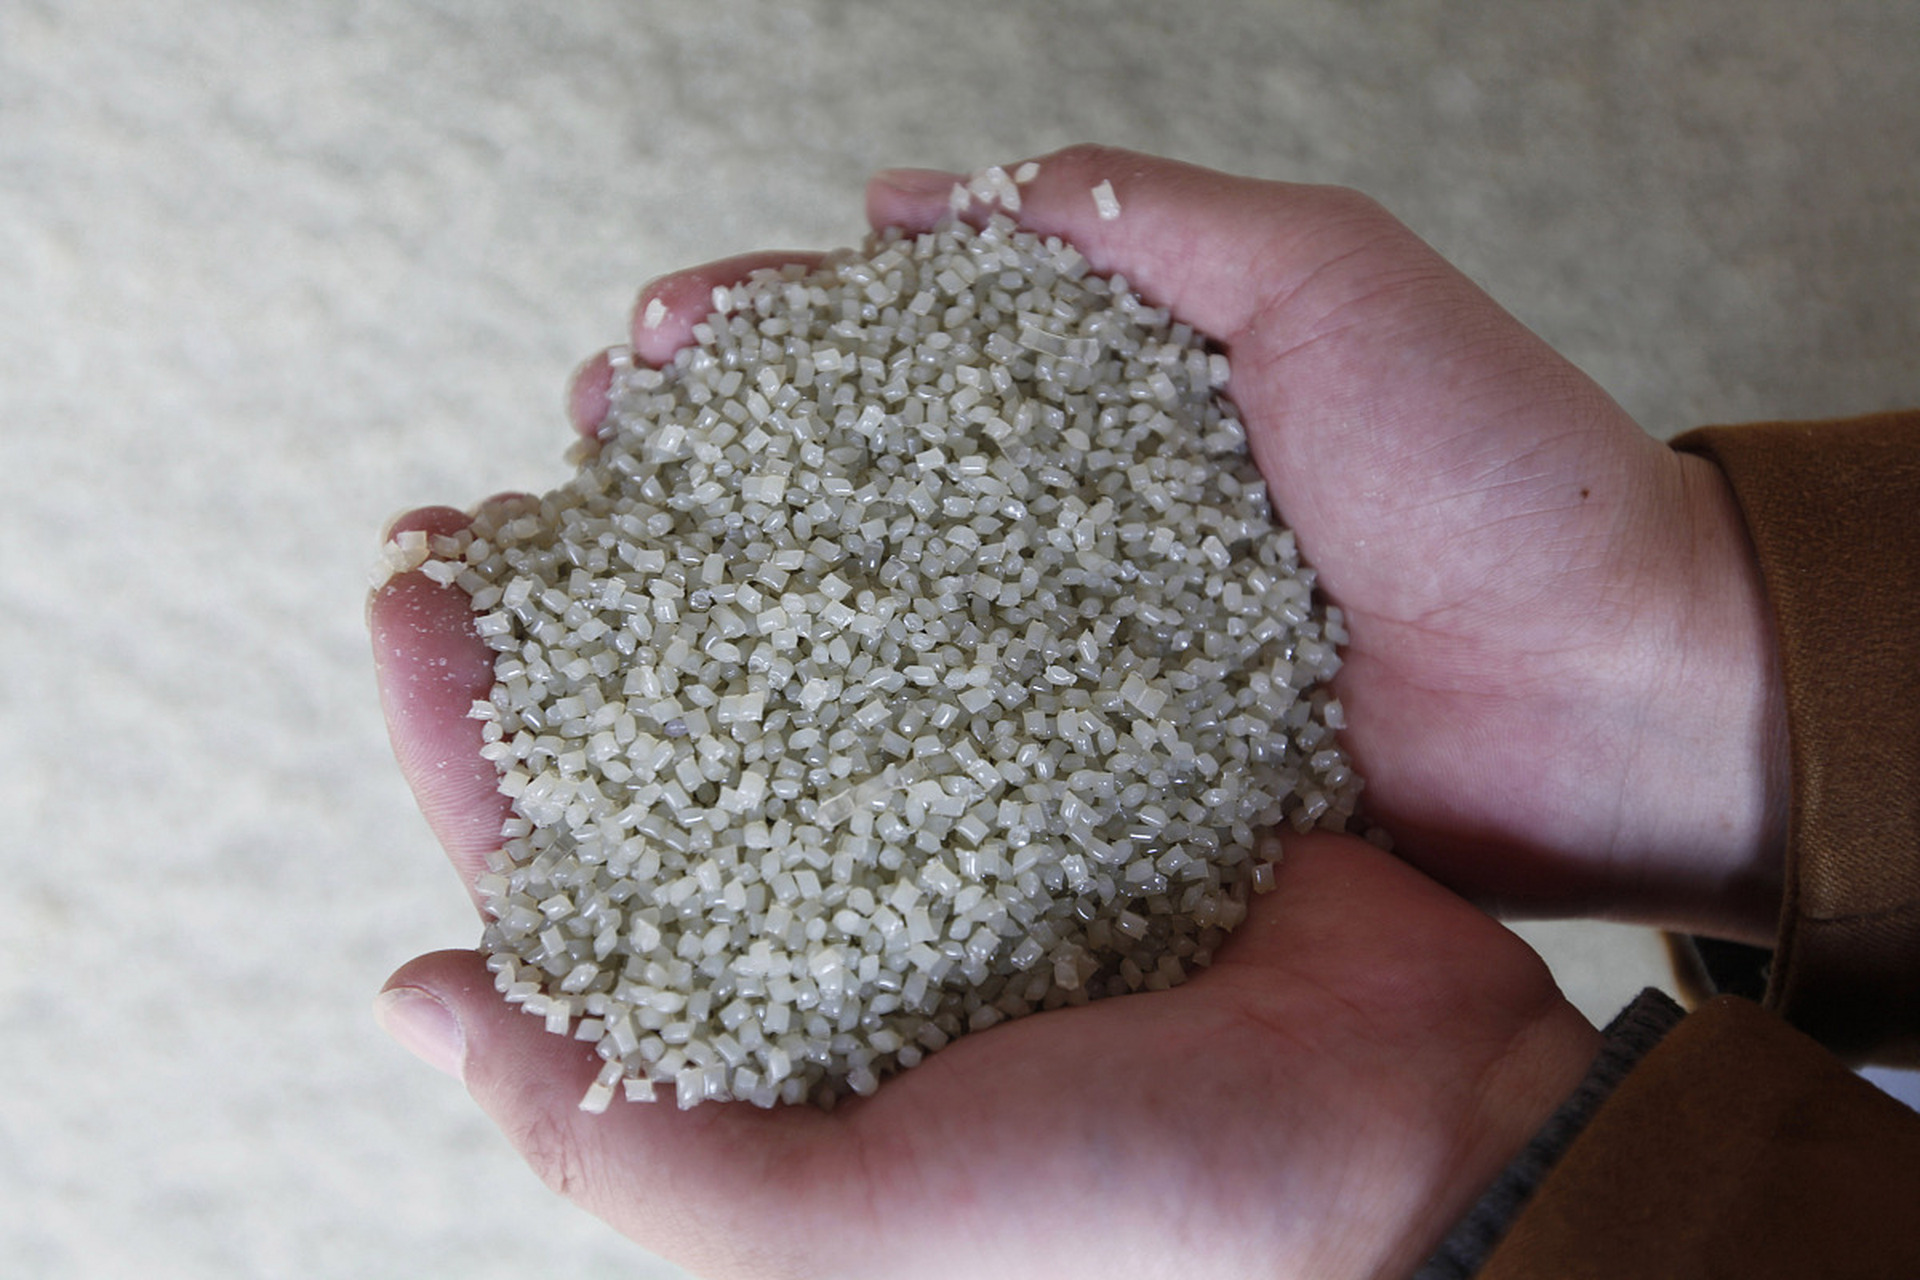 塑料大米是古老谣言  几乎每年,微博微信上都会疯传塑料大米的